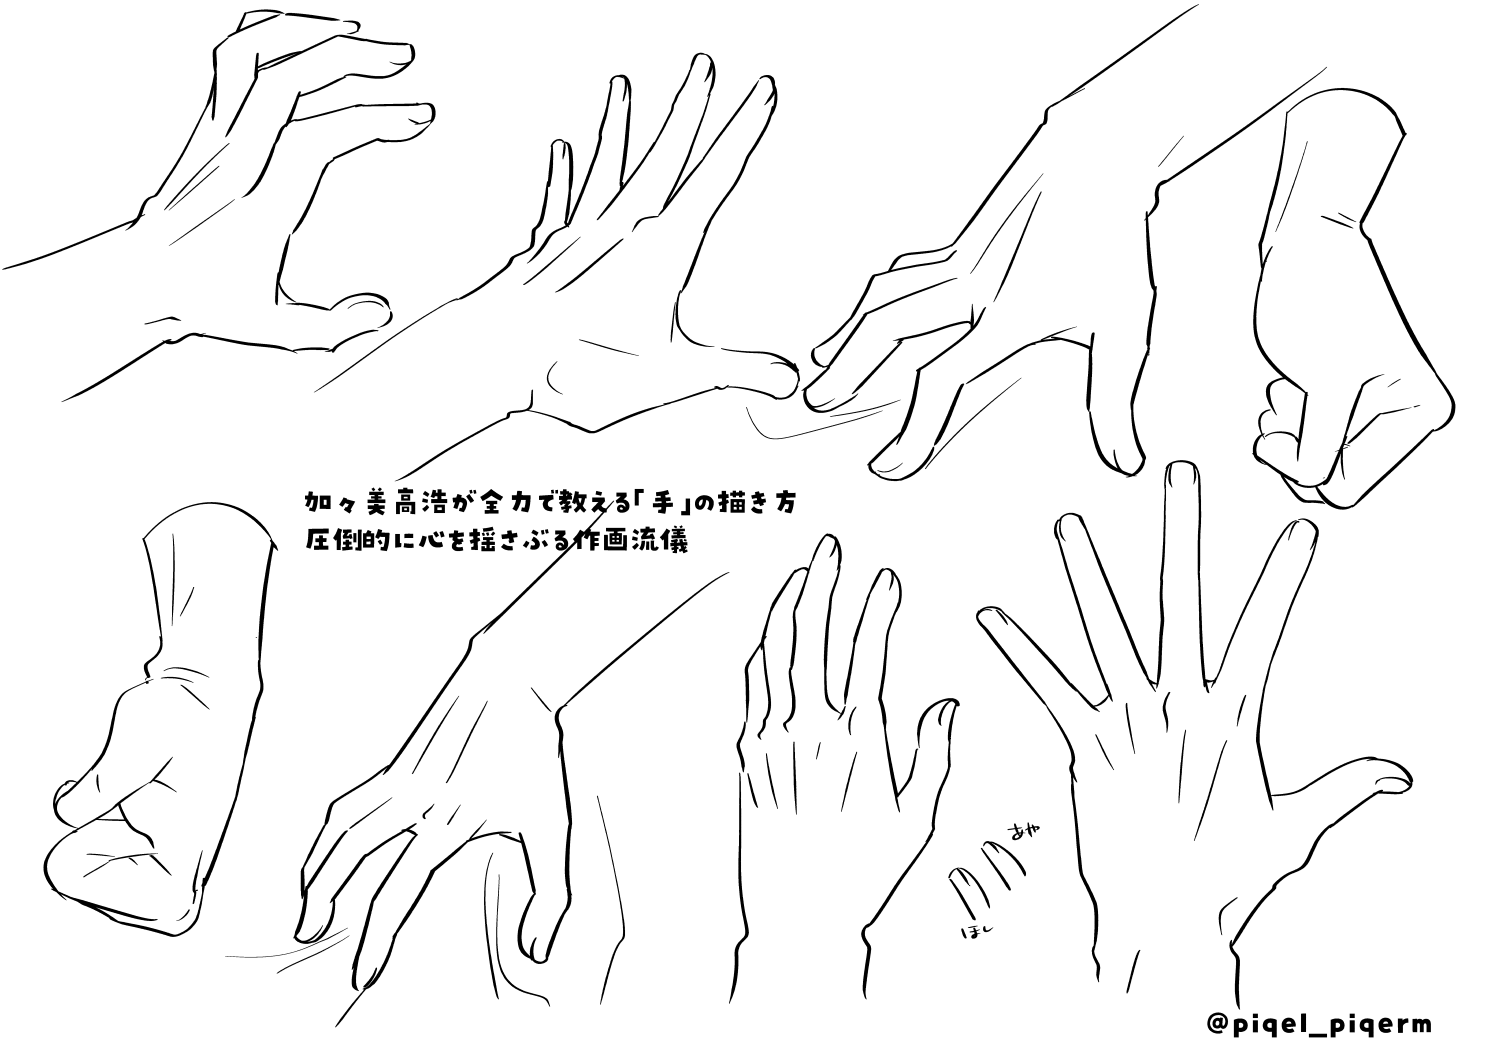 加々美高浩が全力で教える「手」の描き方 圧倒的に心を揺さぶる作画